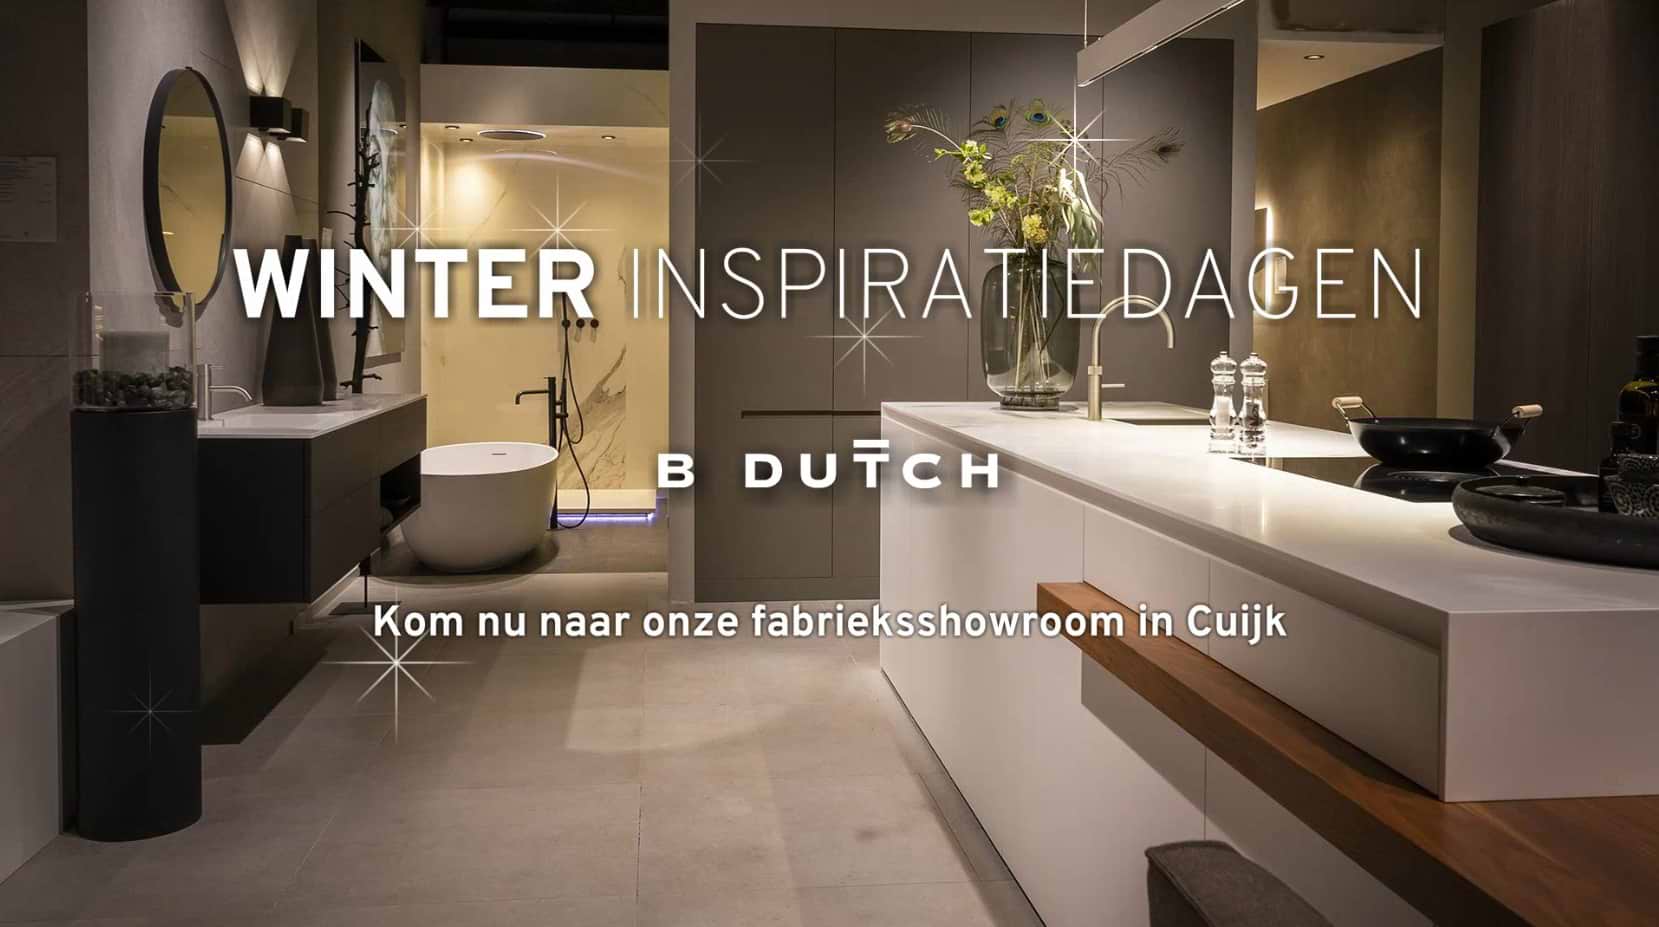 Luxe keukens en luxe badkamers Winter Inspiratiedagen bij B Dutch in Cuijk. Strak design, tijdloos.